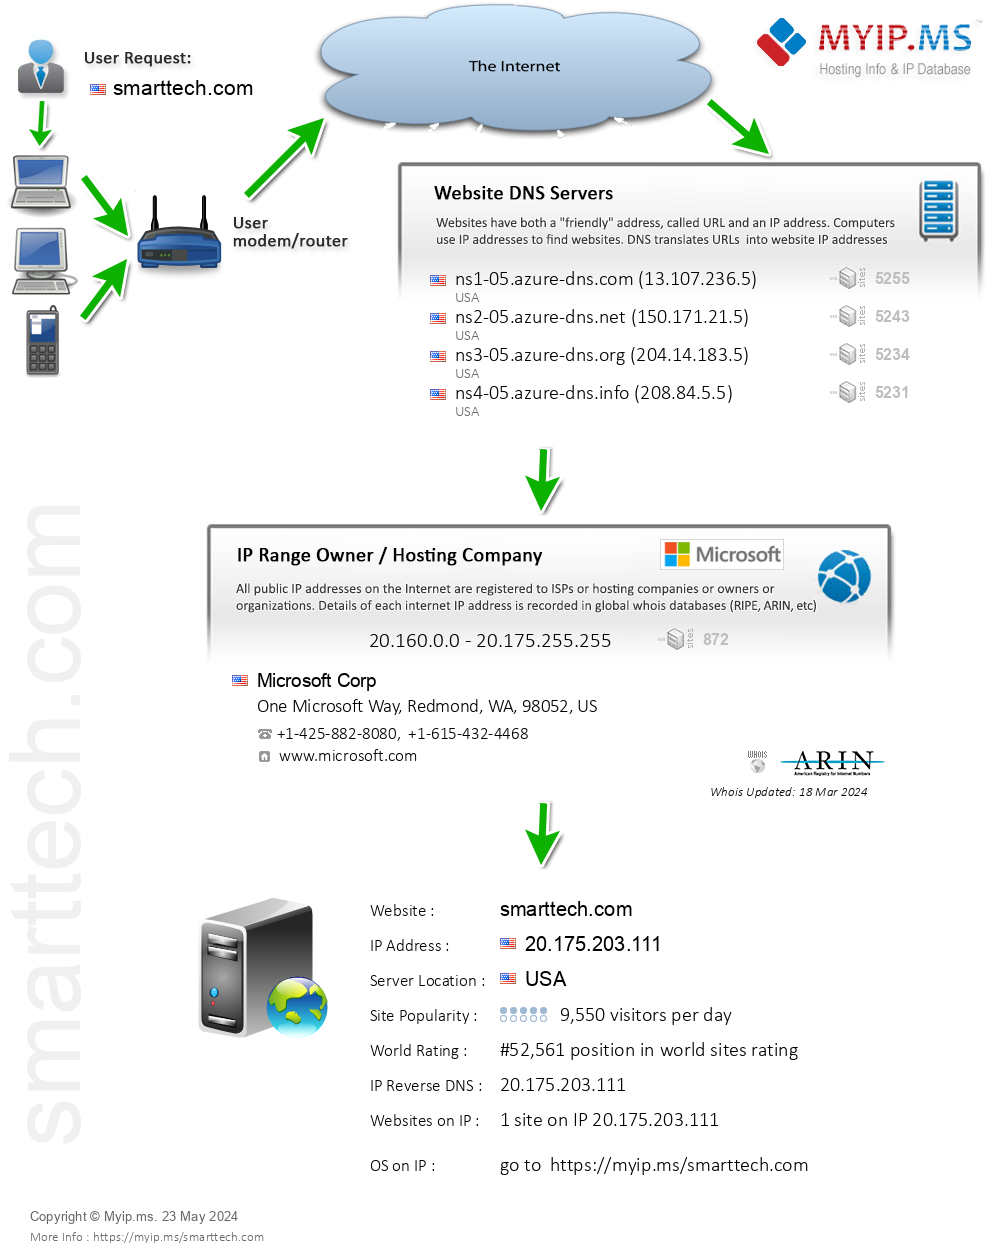 Smarttech.com - Website Hosting Visual IP Diagram